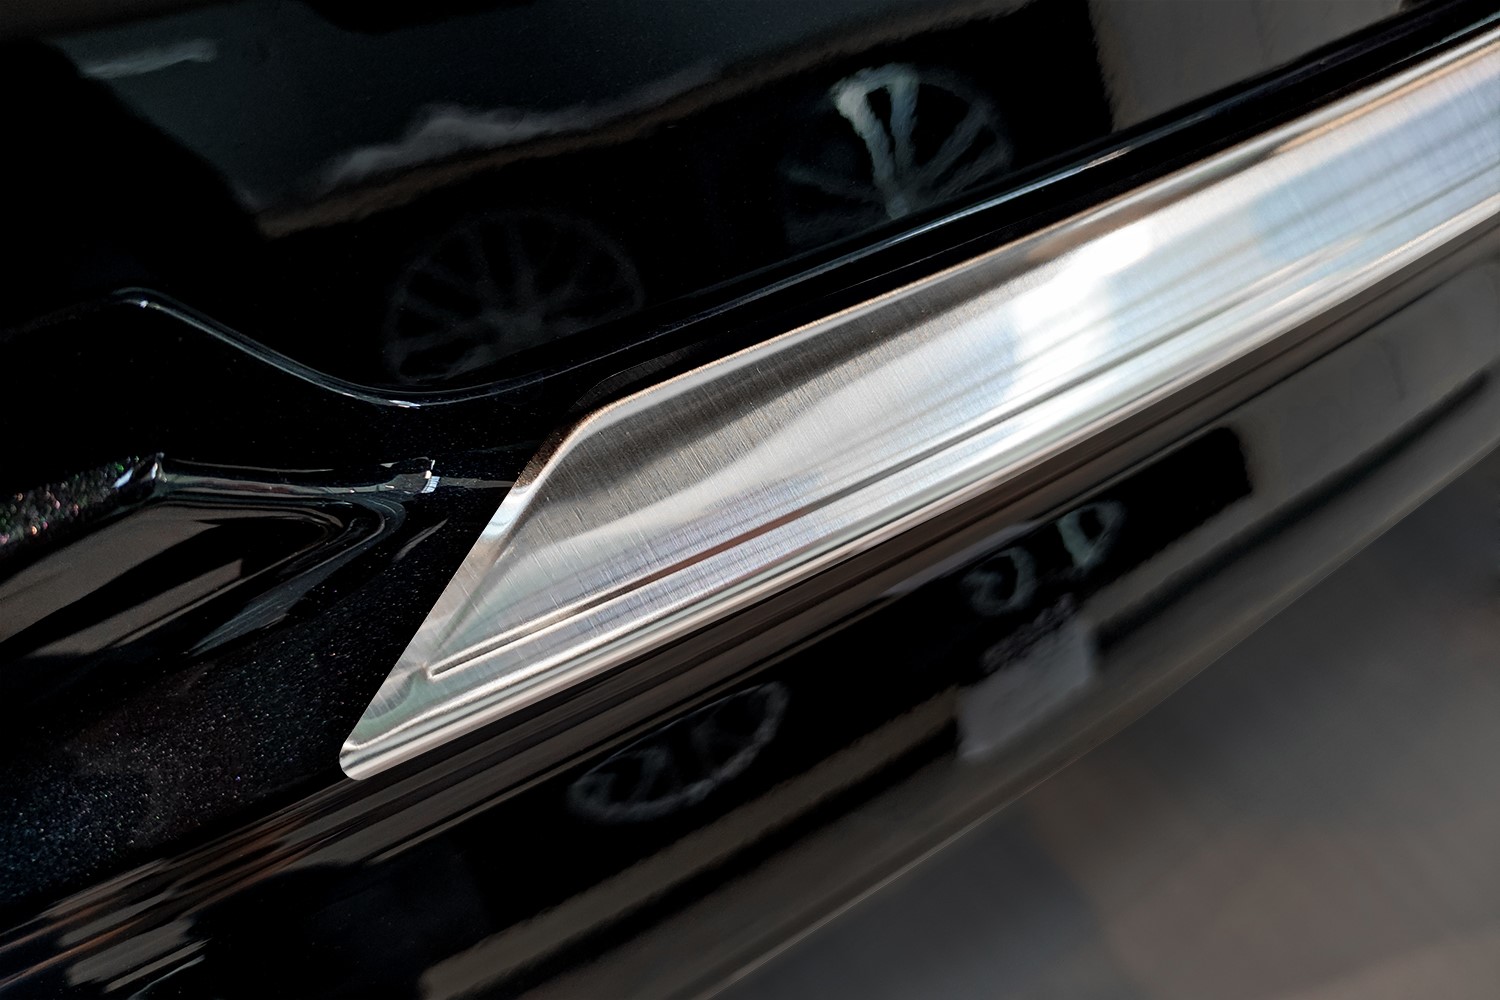 Protection de la plaque de seuil pour Kia Sorento  Couvercle de pare-choc  arrière de voiture, extrémité intérieure extérieure du coffre de la  garniture de la garniture pour Kia 2013 2014 2015 2016